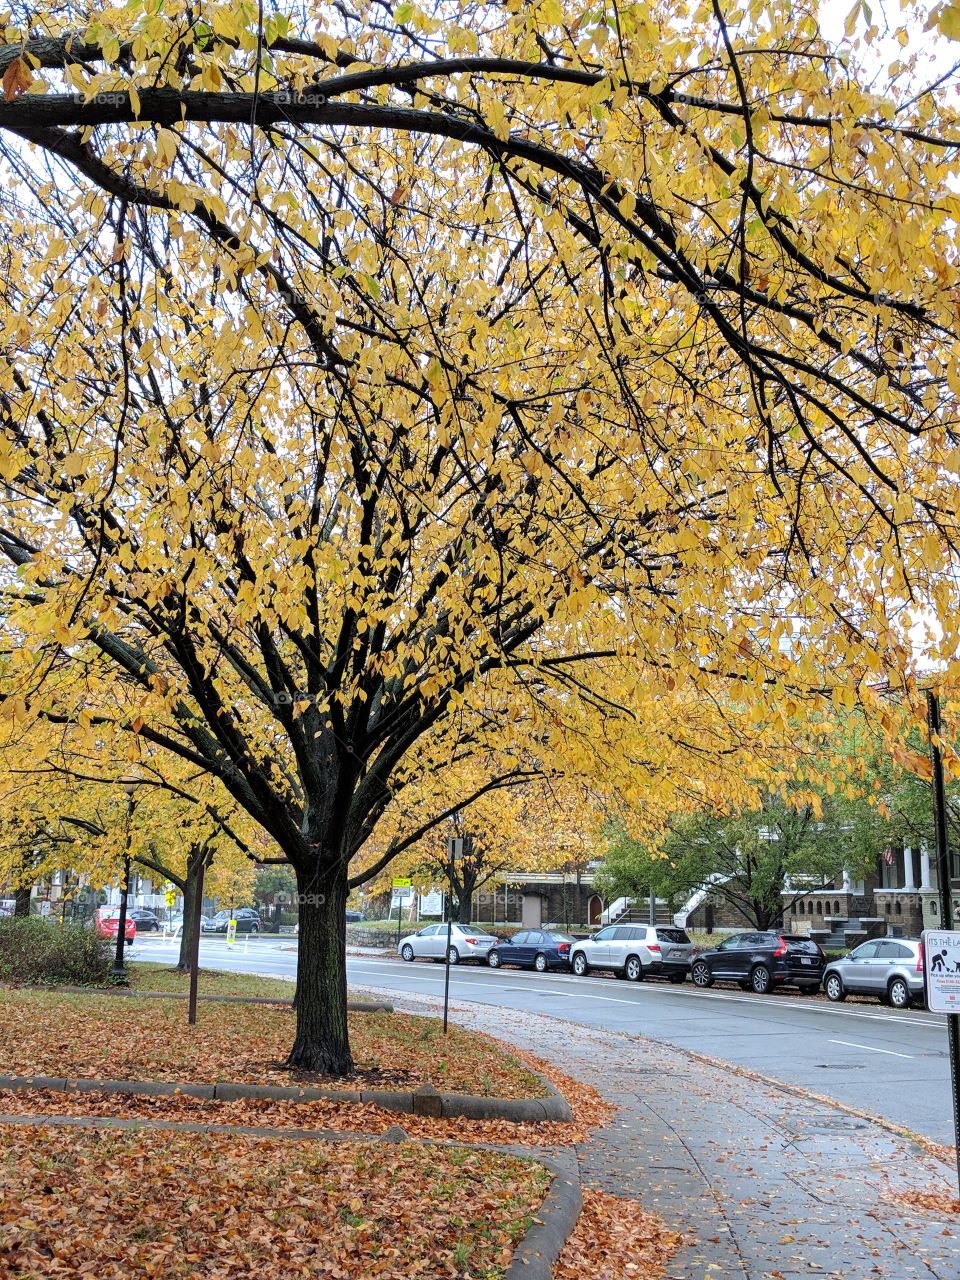 Fall in Washington DC